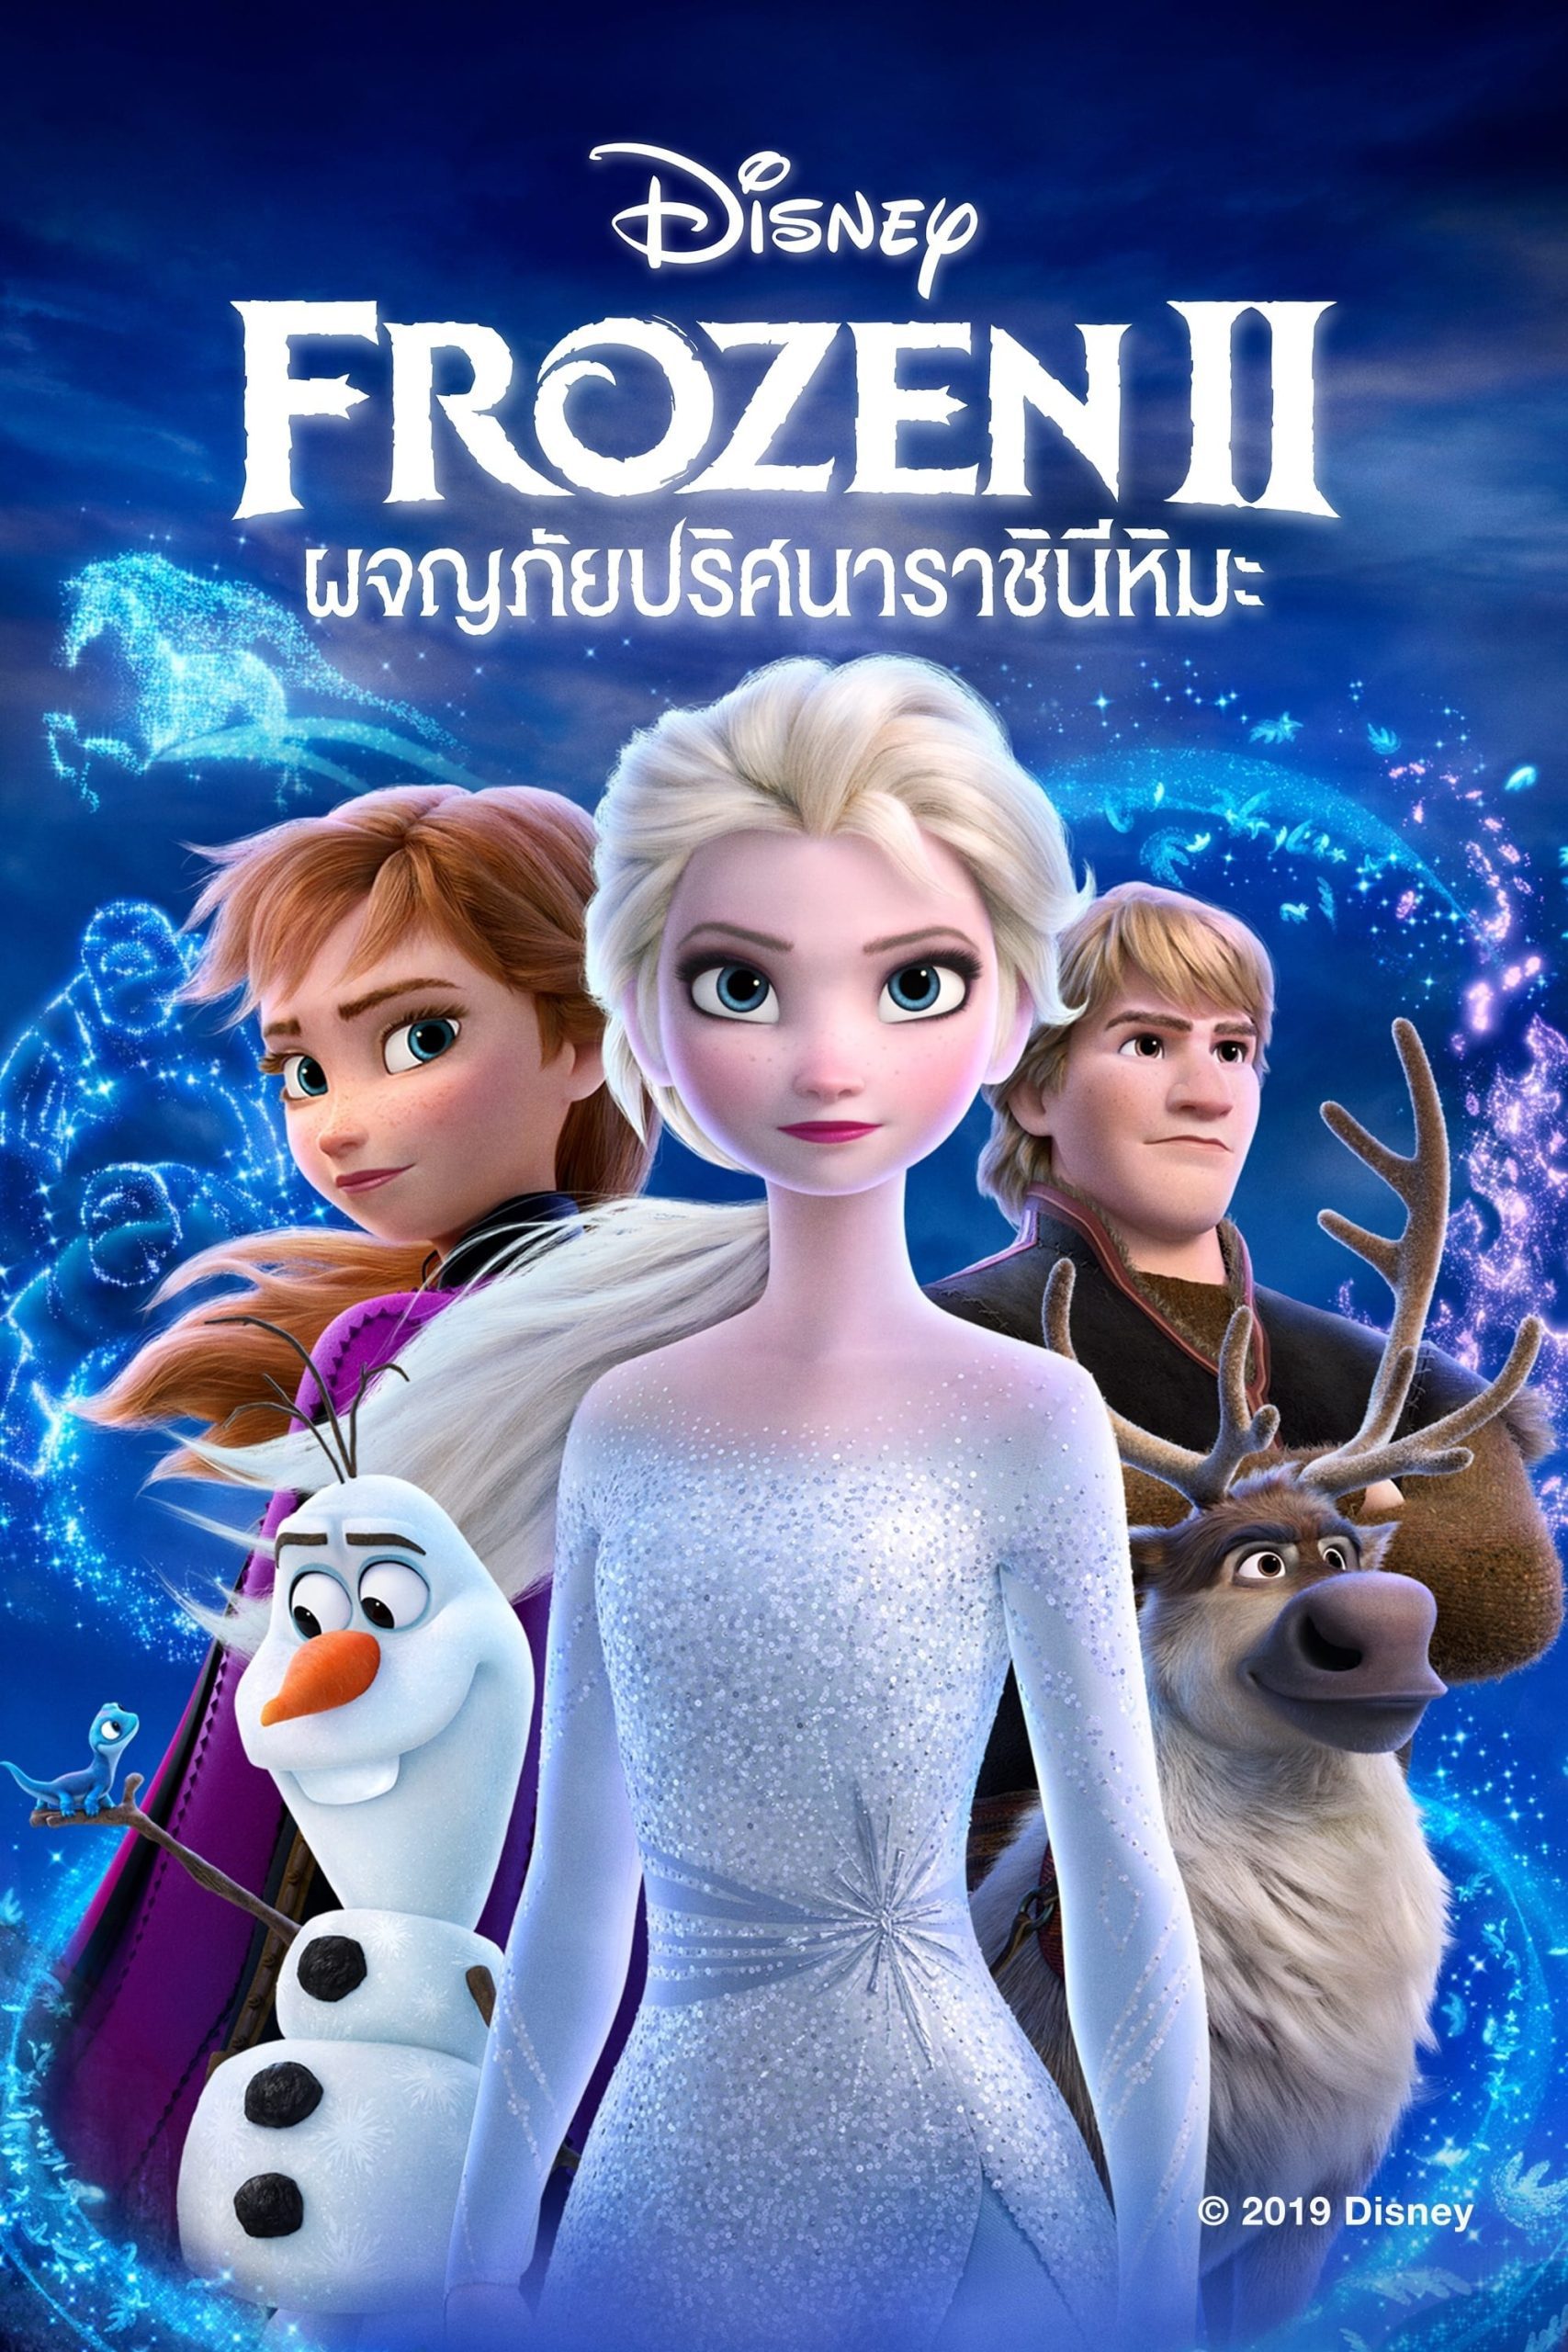 ดูหนังออนไลน์ฟรี Frozen II ผจญภัยปริศนาราชินีหิมะ